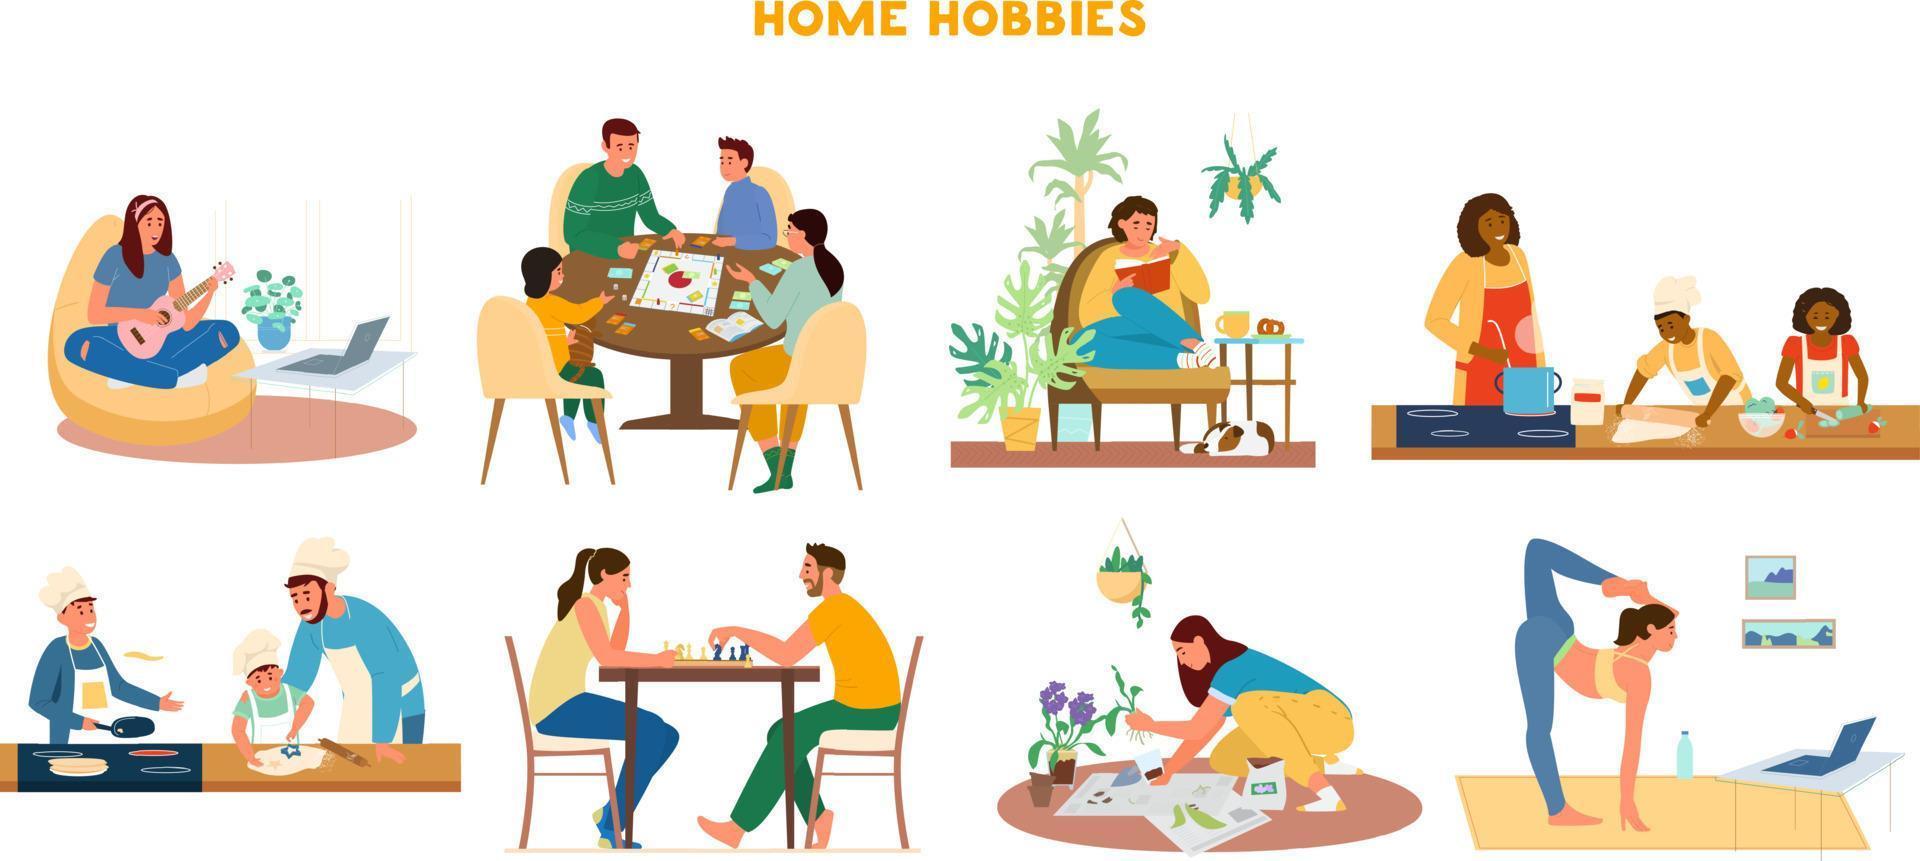 conjunto vectorial de ilustraciones de pasatiempos domésticos. actividades de ocio en casa jugando ukelele, juegos de mesa, leyendo, cocinando, jugando ajedrez, jardinería, haciendo yoga. vector